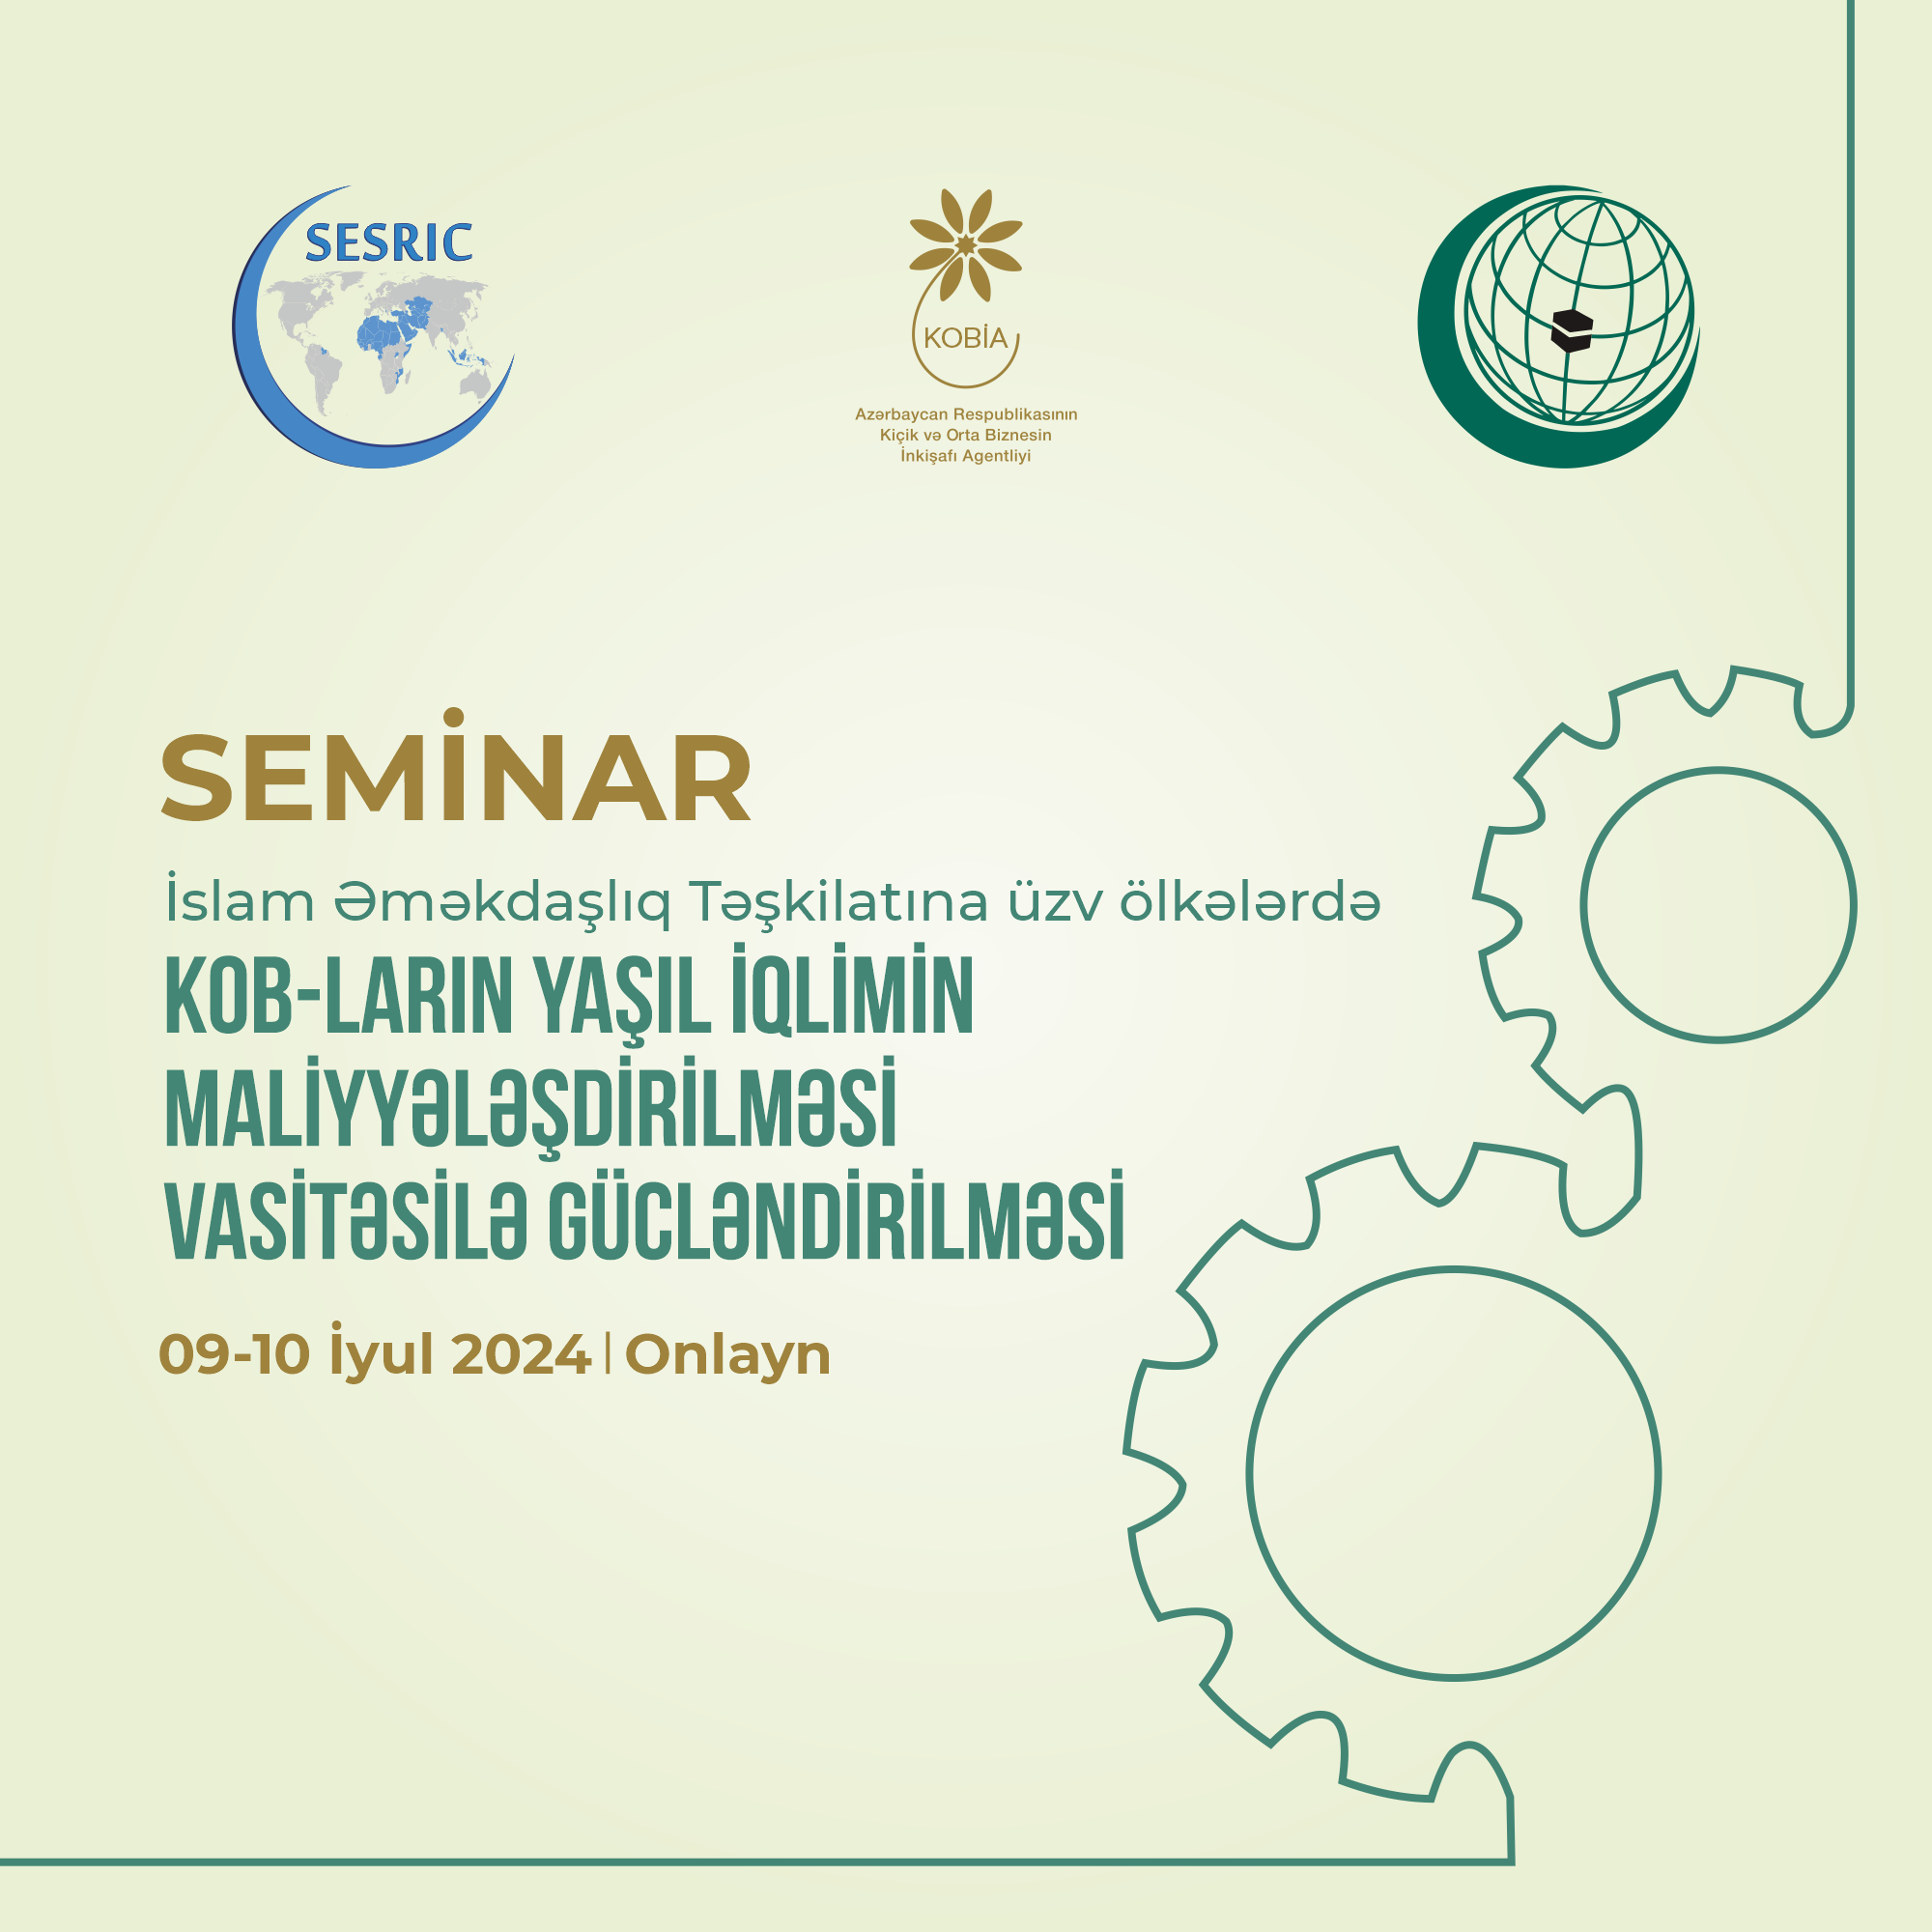 Состоится семинар по  финансированию климата для МСП